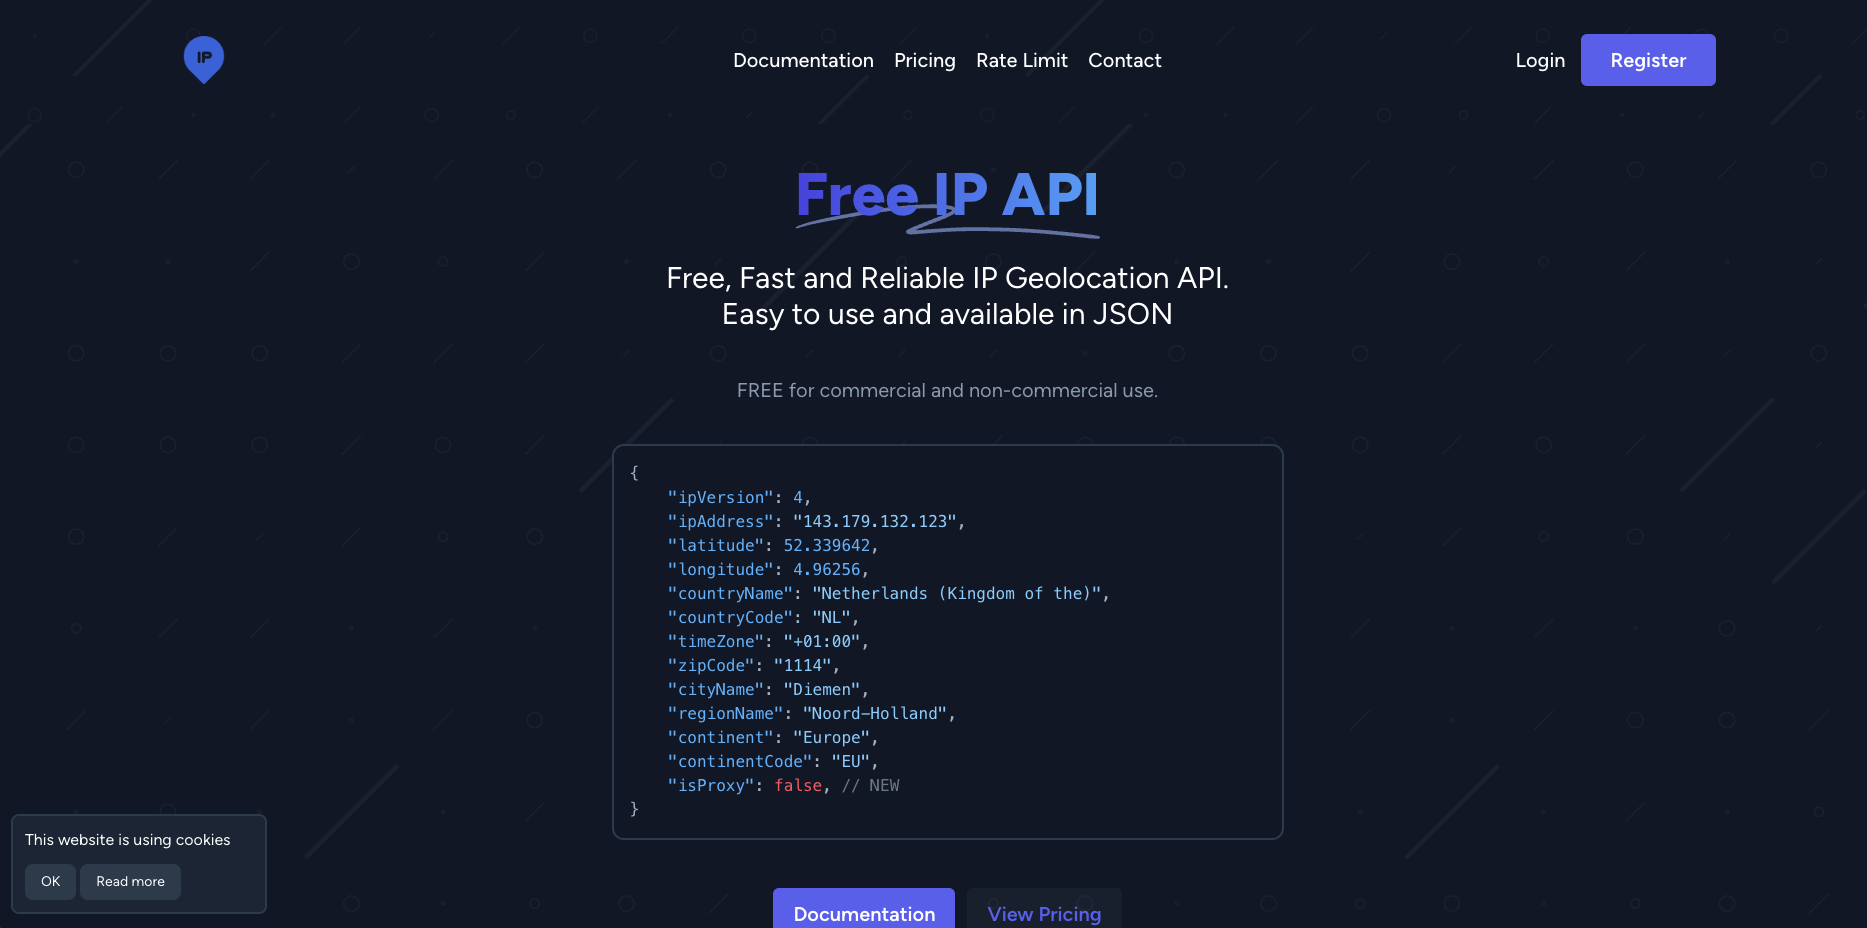 Free IP API Image